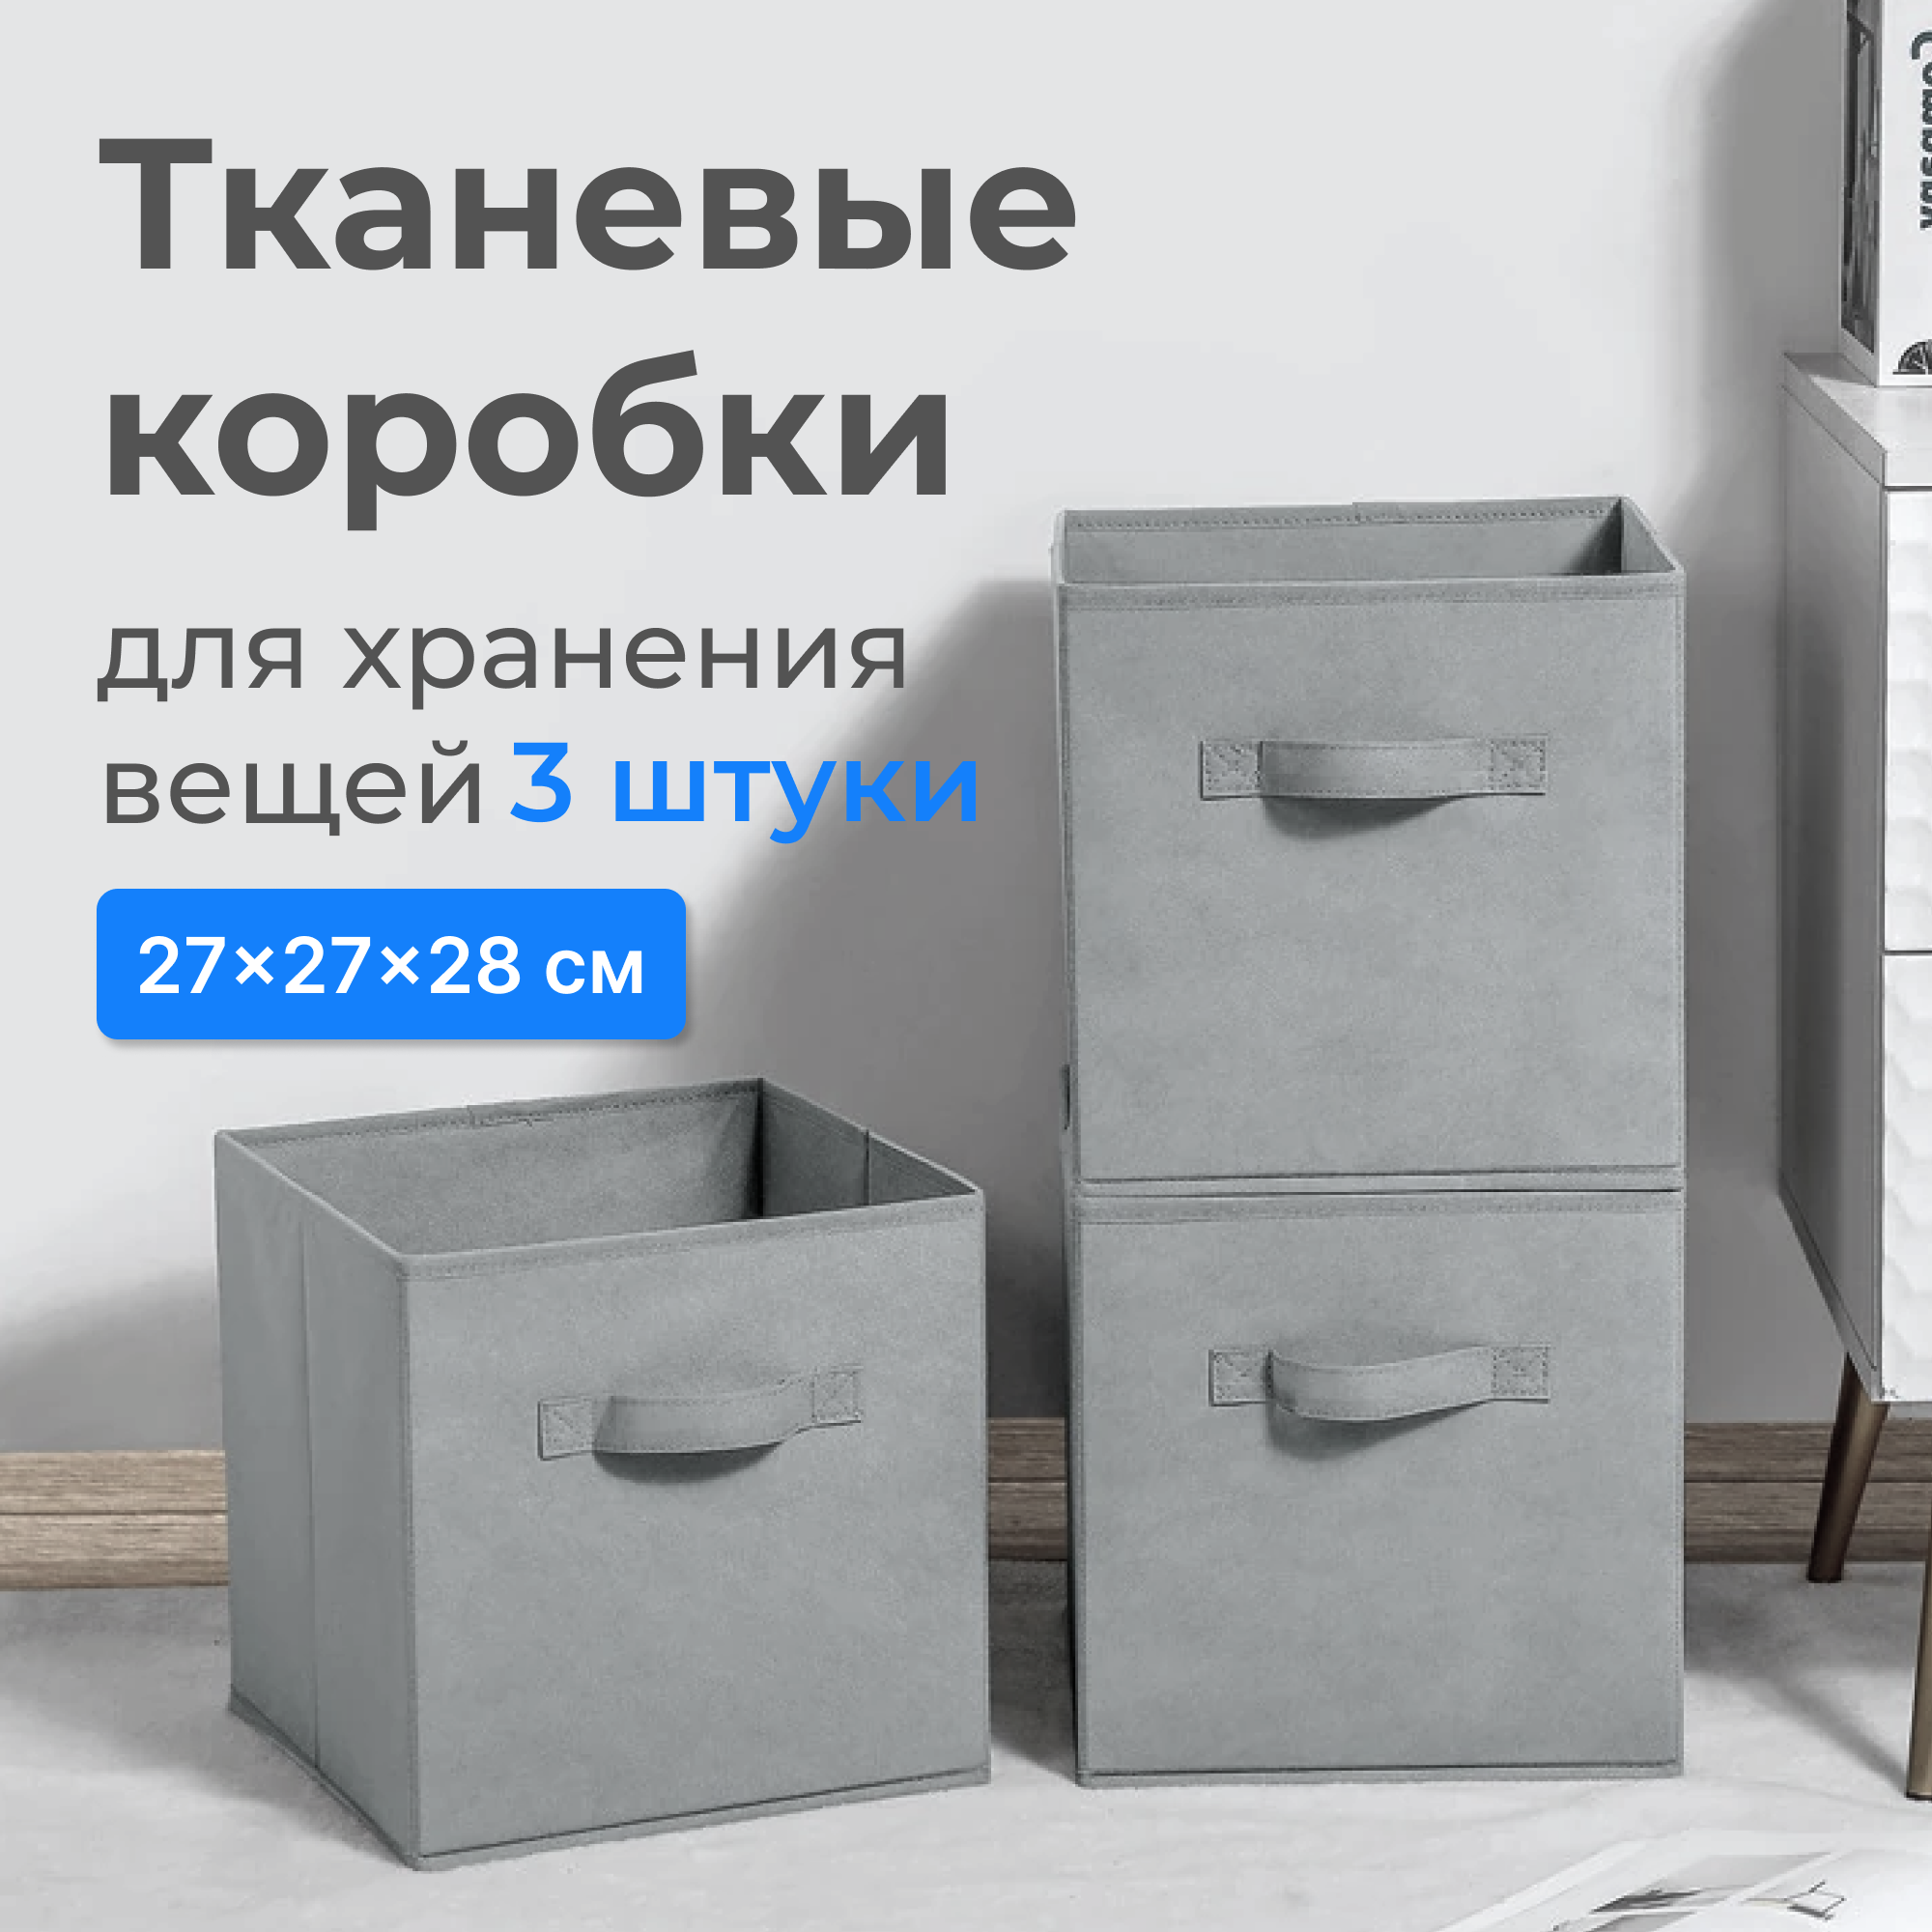 Коробки для хранения вещей, игрушек / кофры / короба стеллажные, комплект из трёх штук, 27x27x28 см, цвет: серый